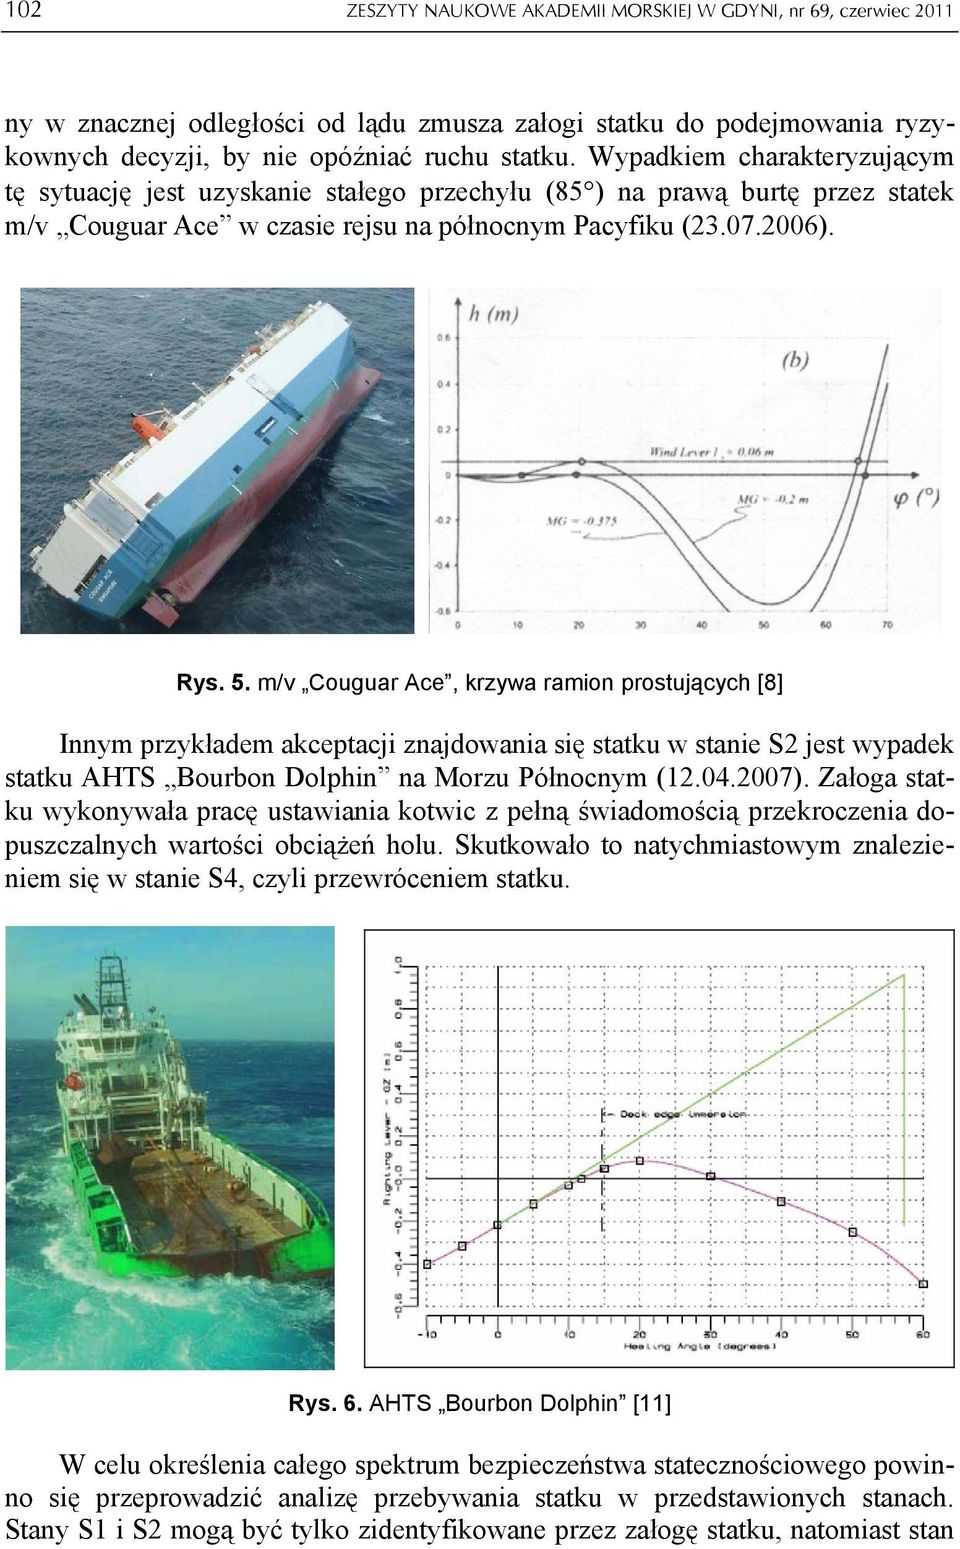 m/v Couguar Ace, krzywa ramion prostujących [8] Innym przykładem akceptacji znajdowania się statku w stanie S2 jest wypadek statku AHTS Bourbon Dolphin na Morzu Północnym (12.04.2007).